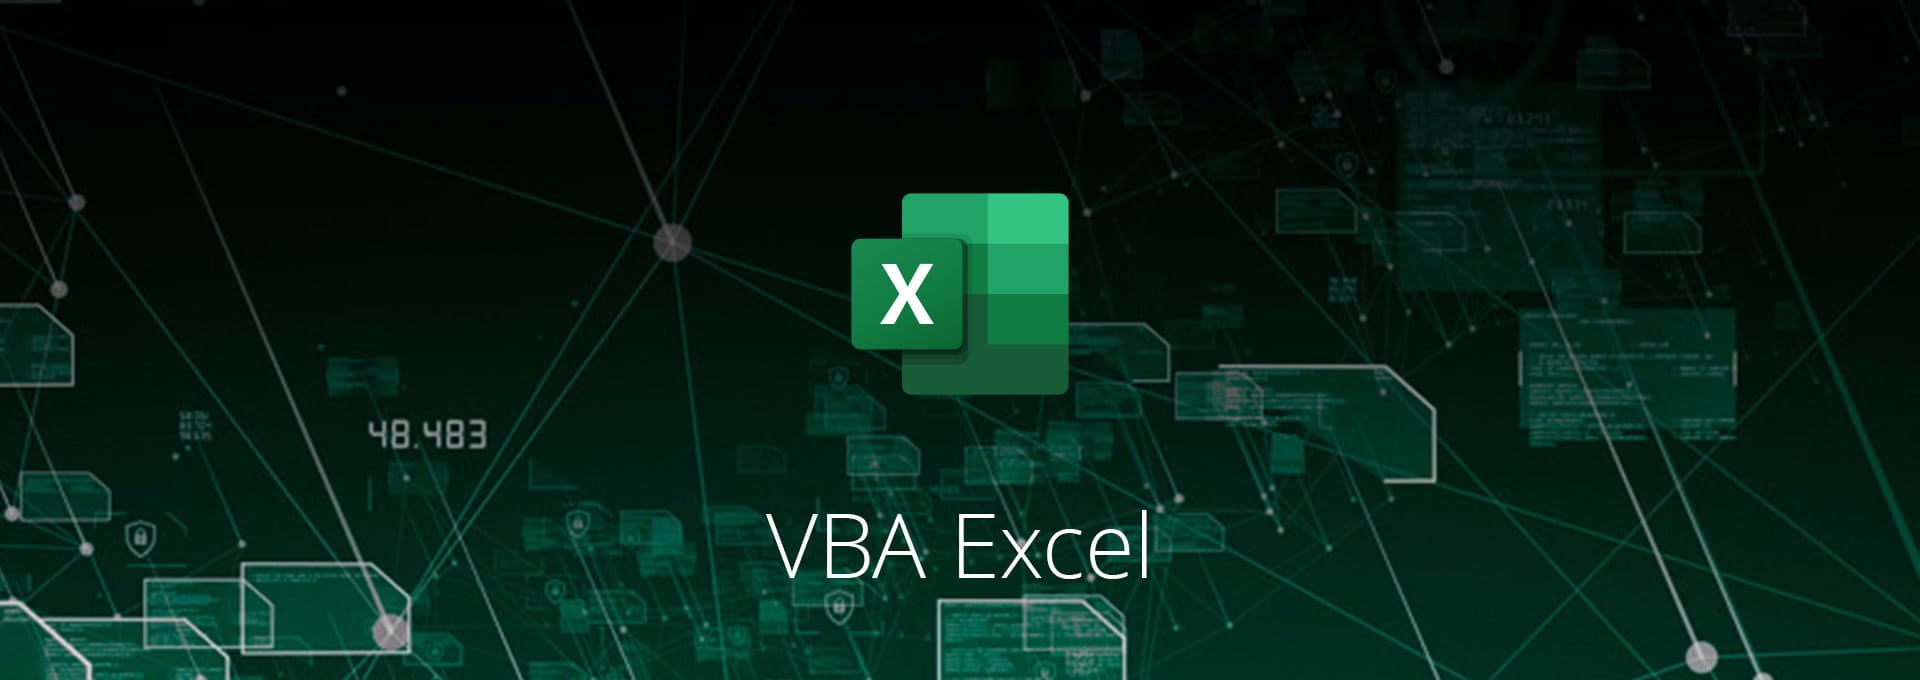 Actualités Diverses - Focus VBA Excel